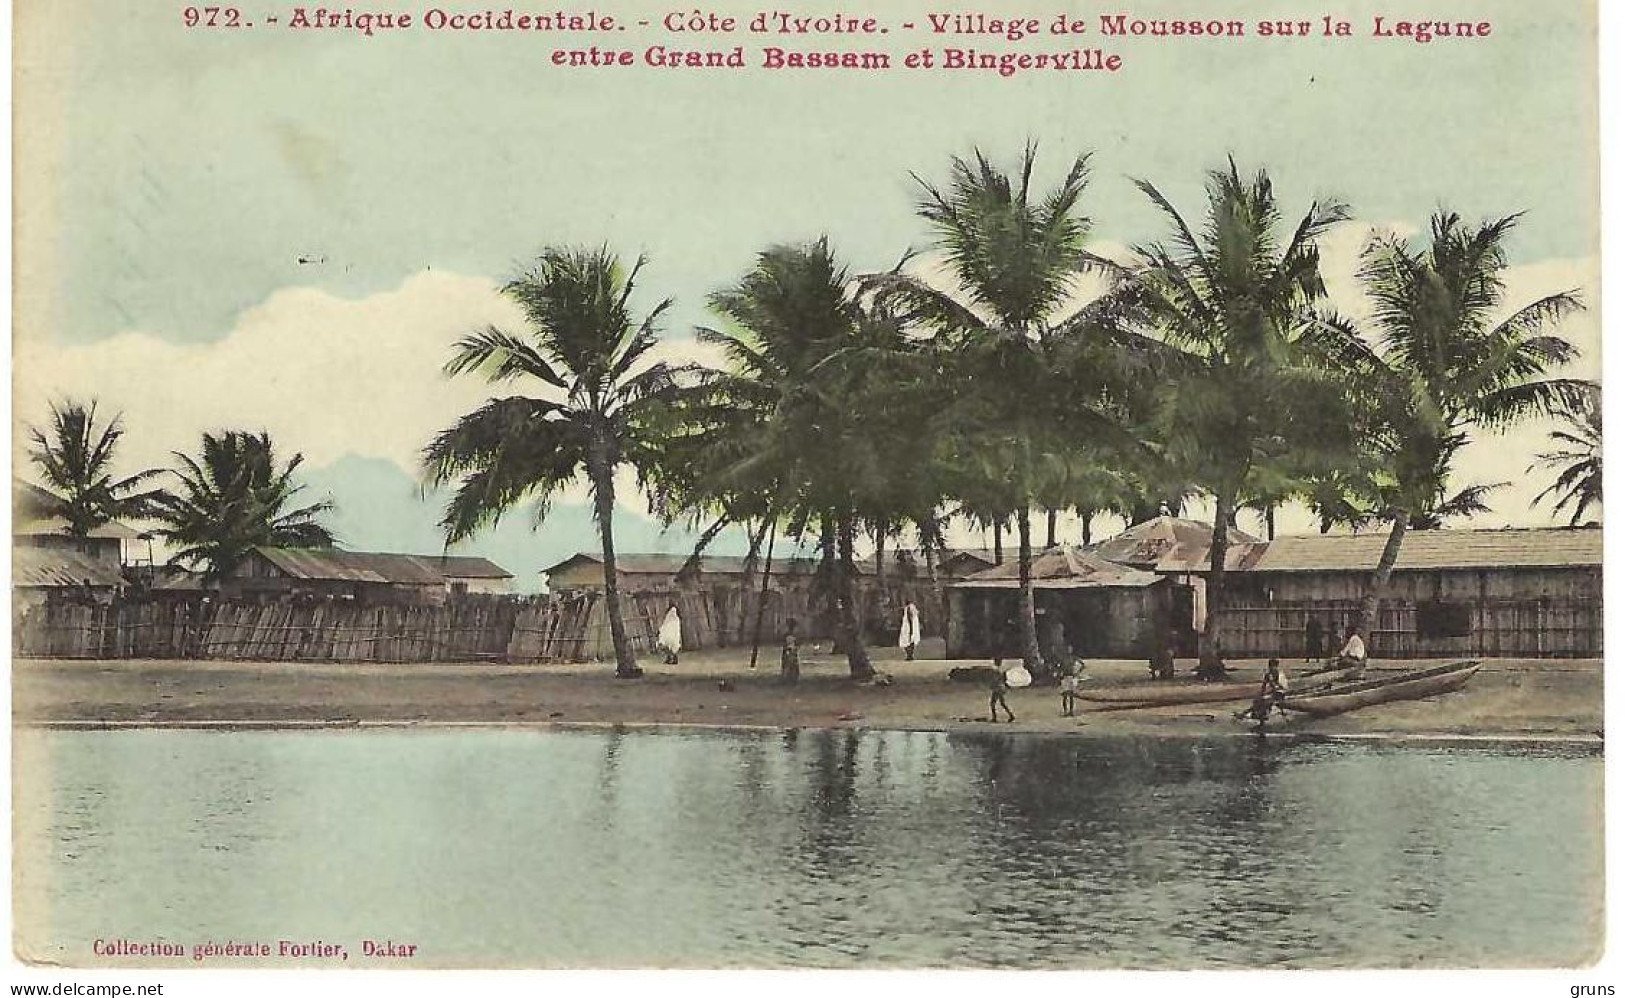 Afrique Occidentale Cote D'Ivoire Village De Mousson Sur La Lagune Entre Grand Bassam Et Bingerville 972, Rare - Ivory Coast